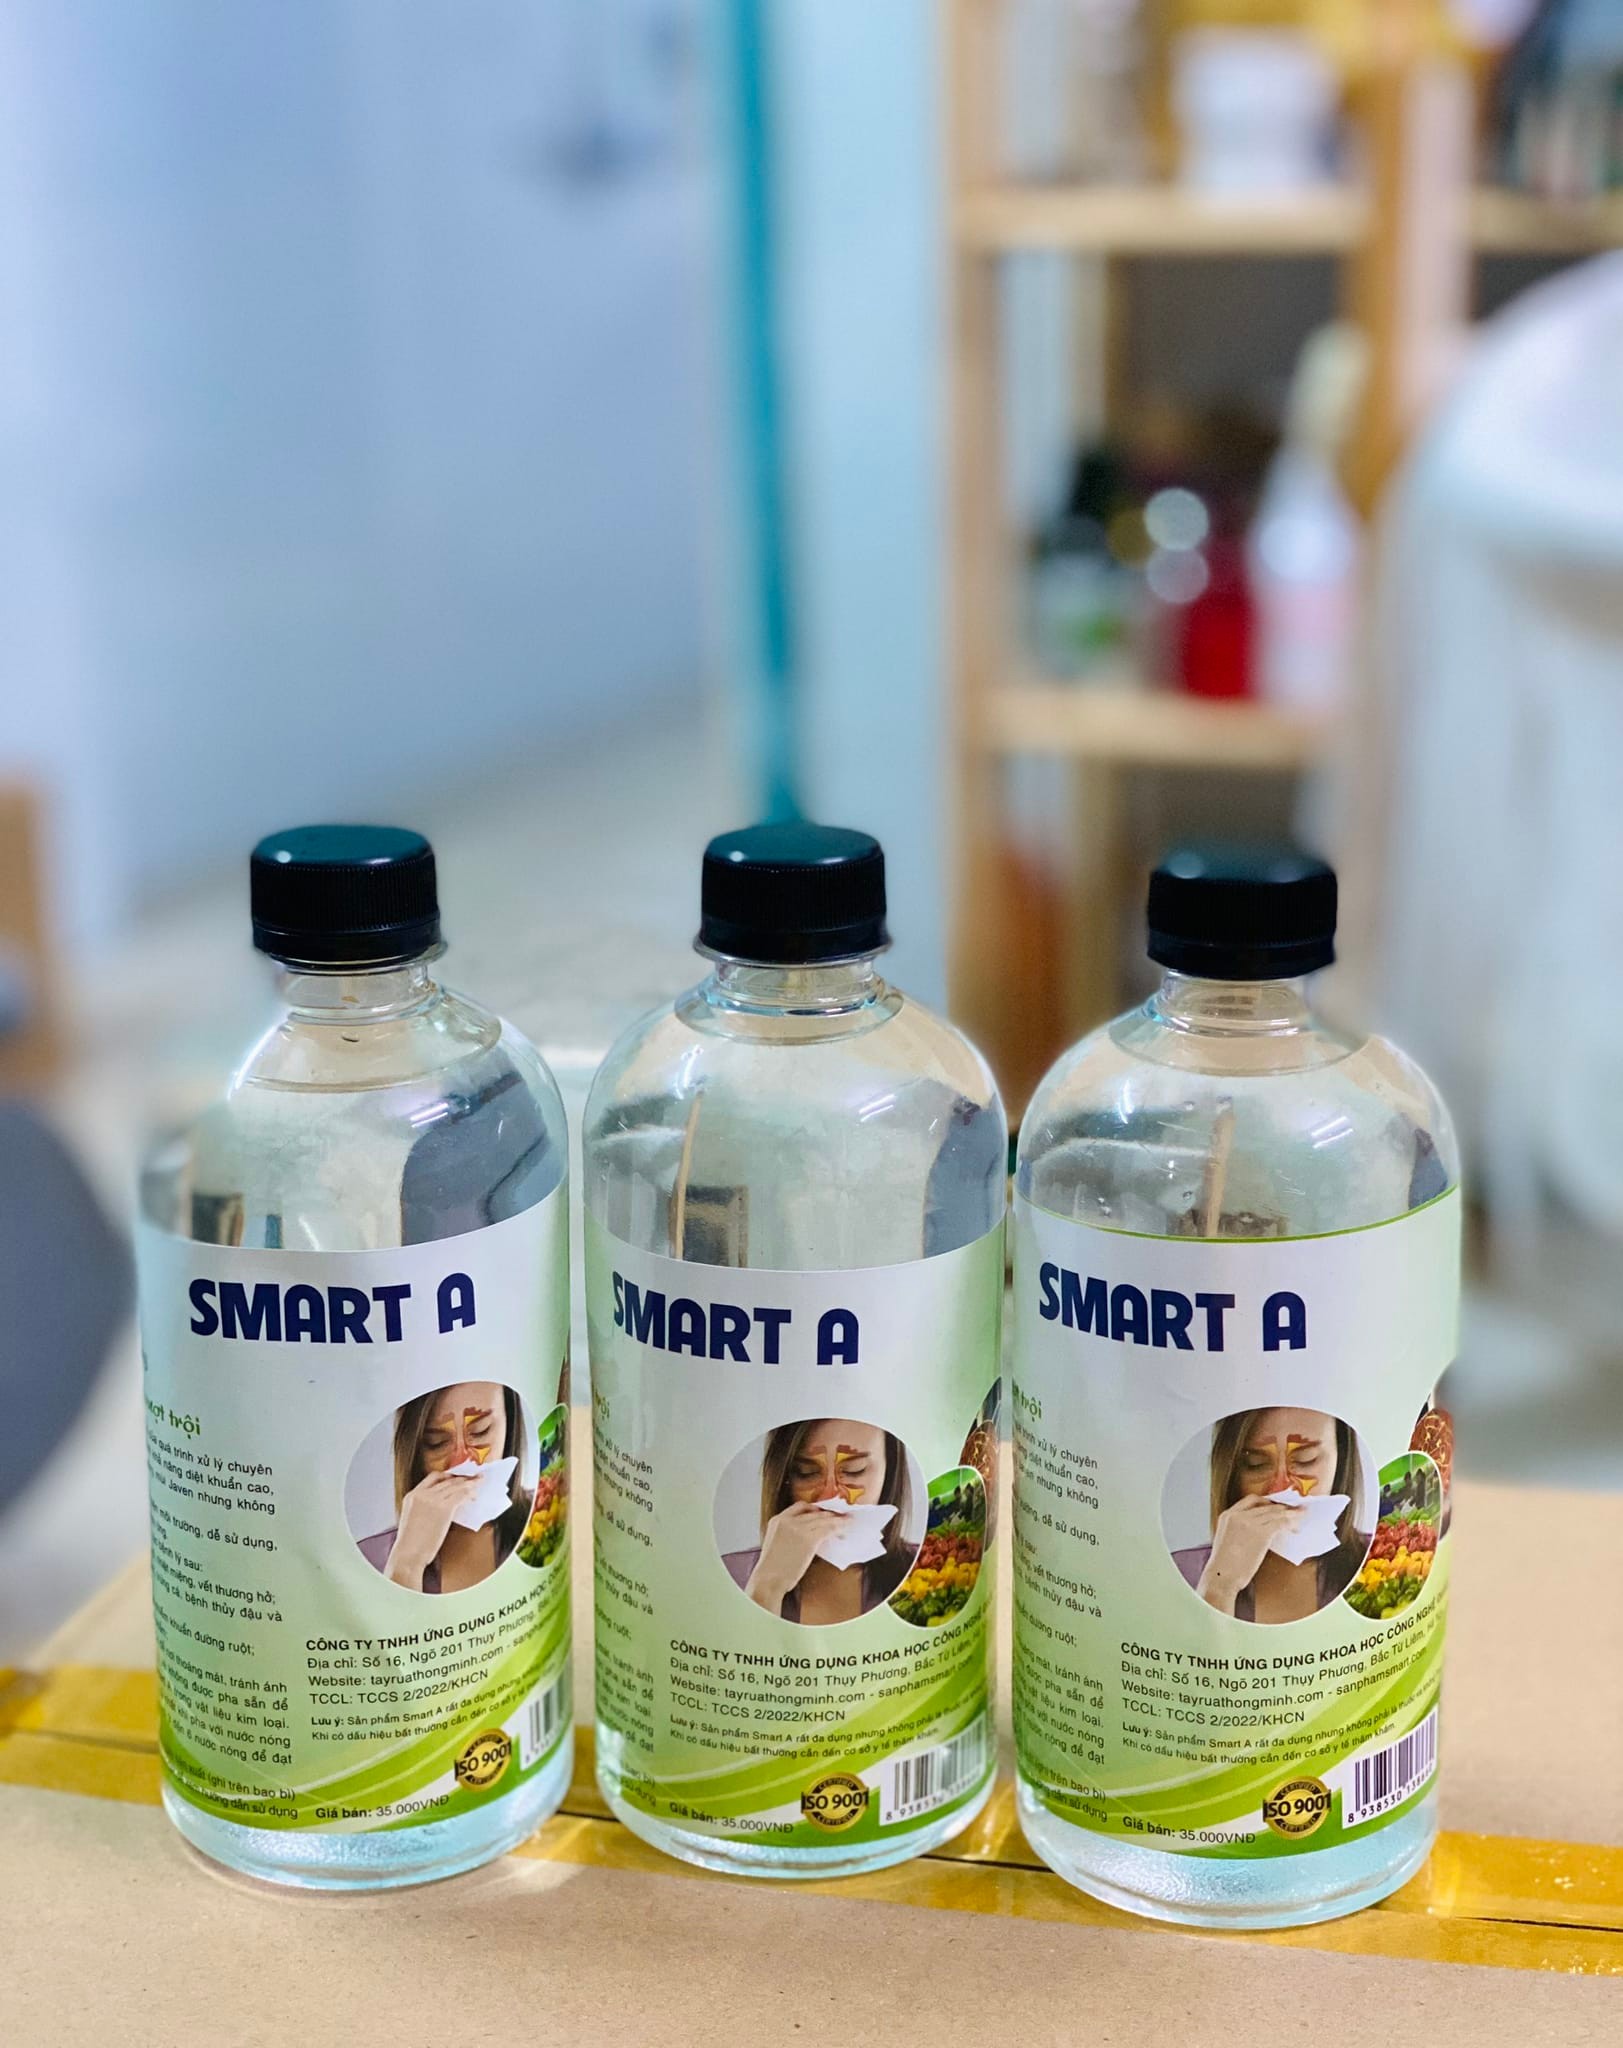 Smart A (Nước A - Anolyte) nước muối điện hoá hoạt hoá sát khuẩn 500ml